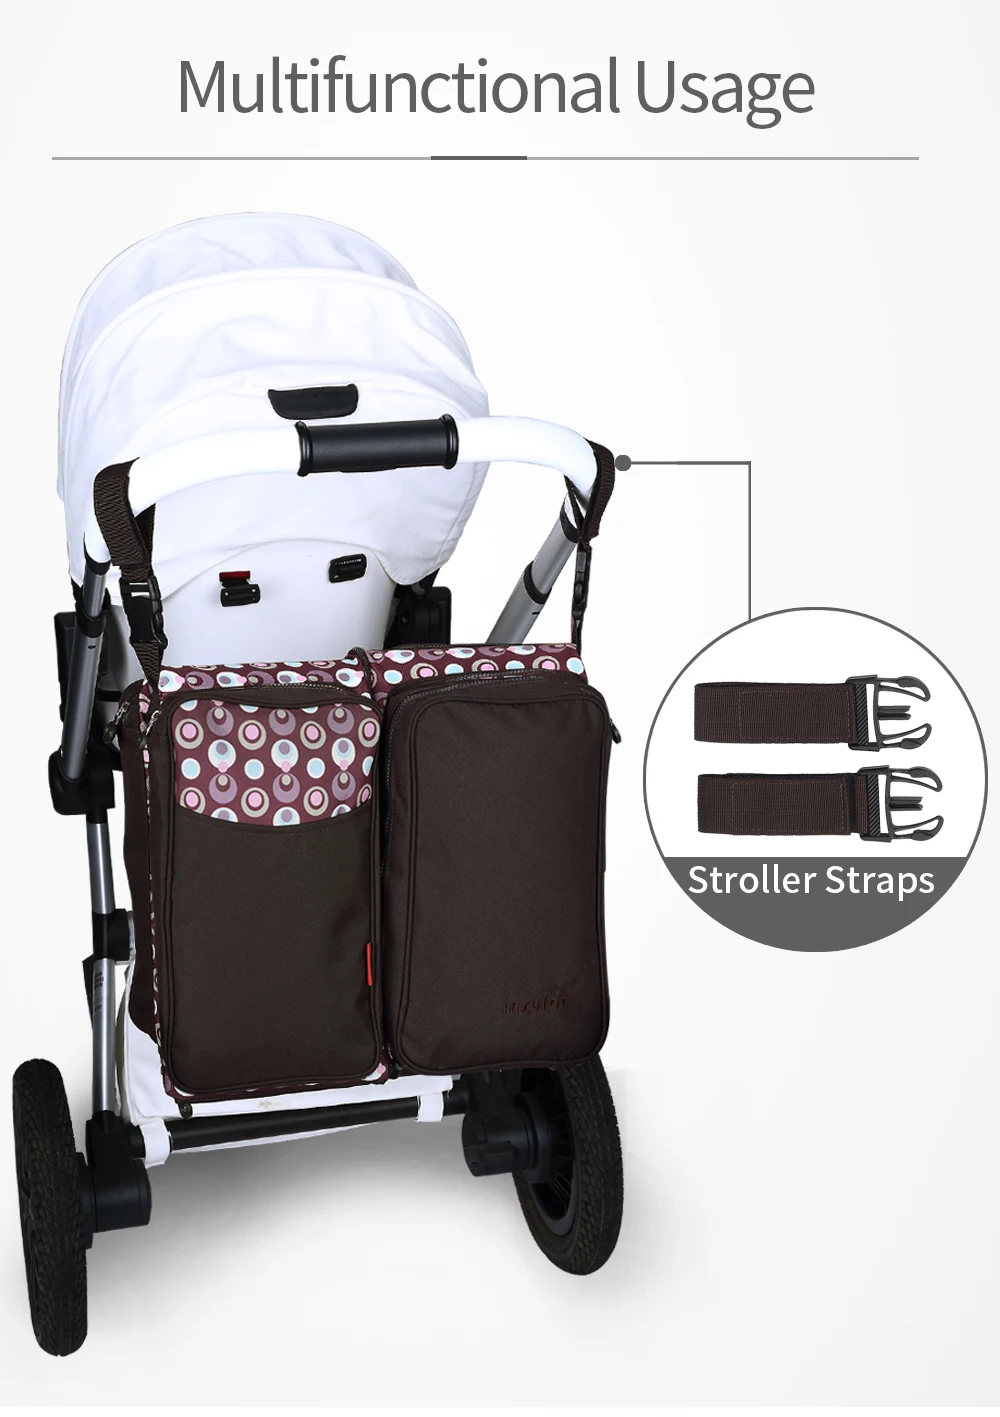 3 в 1 портативная многофункциональная детская кроватка для путешествий, складная кровать с москитной сеткой, сумка для подгузников для мам и мам